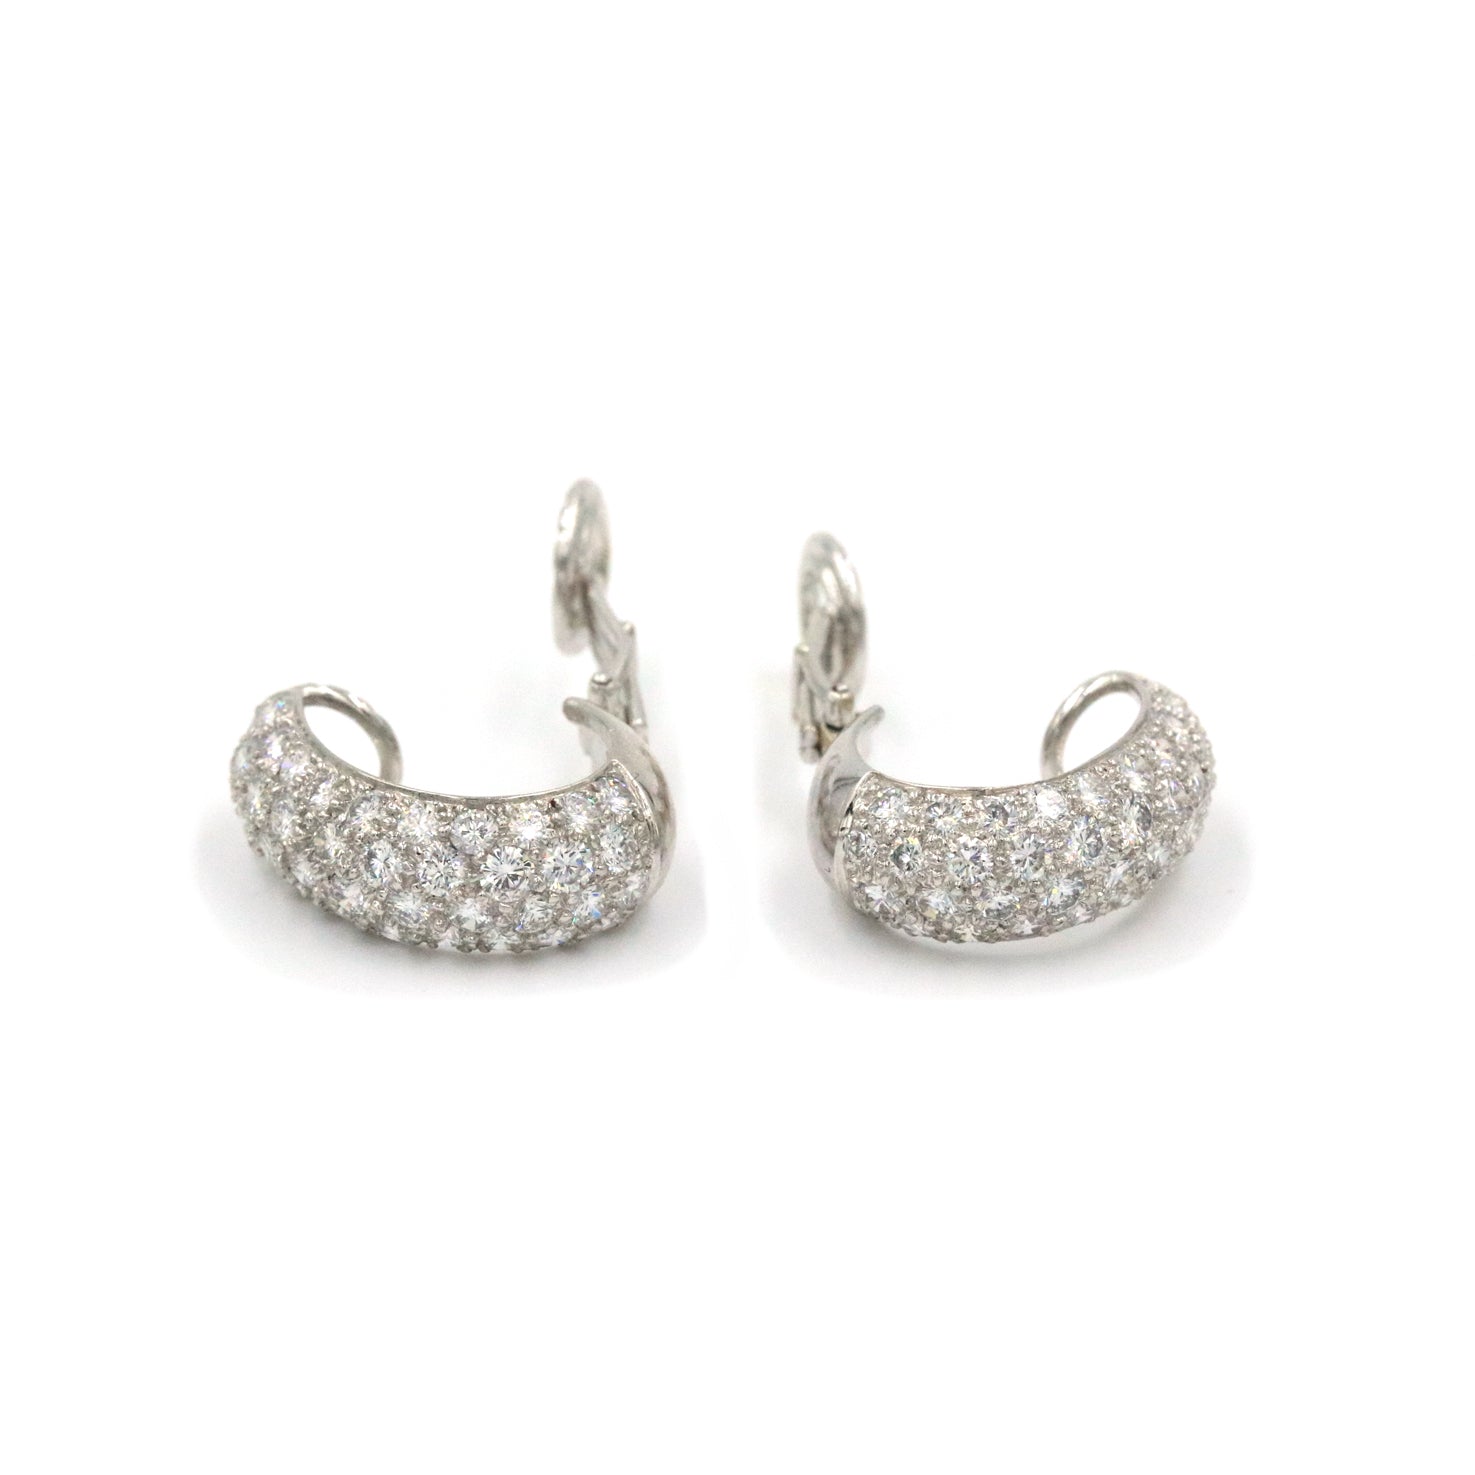 Harry Winston Diamond Earrings